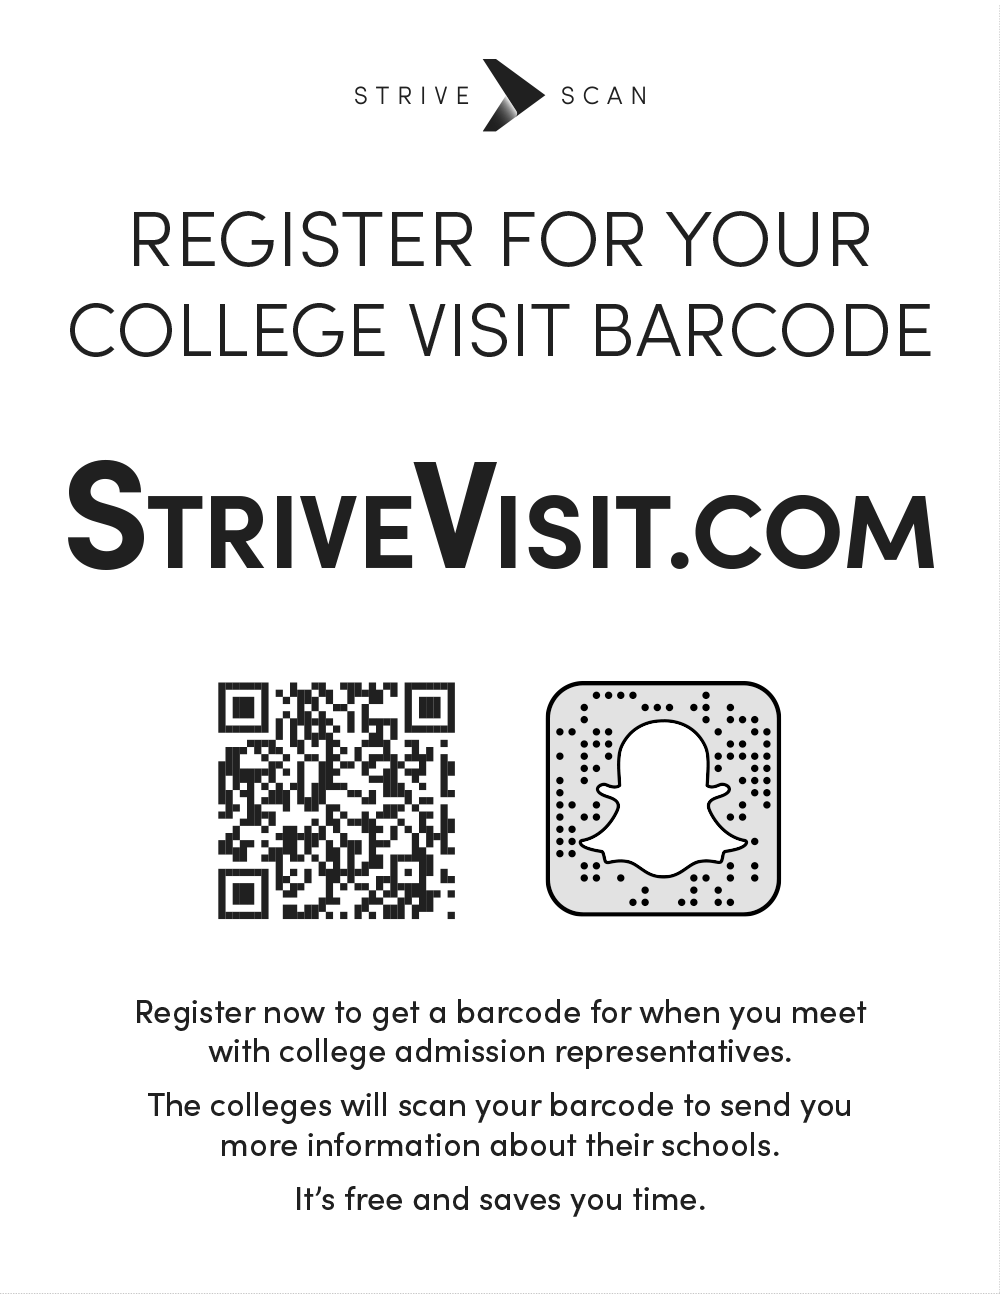 StriveScan for High School Visits - StriveVisit.com Quartersheet